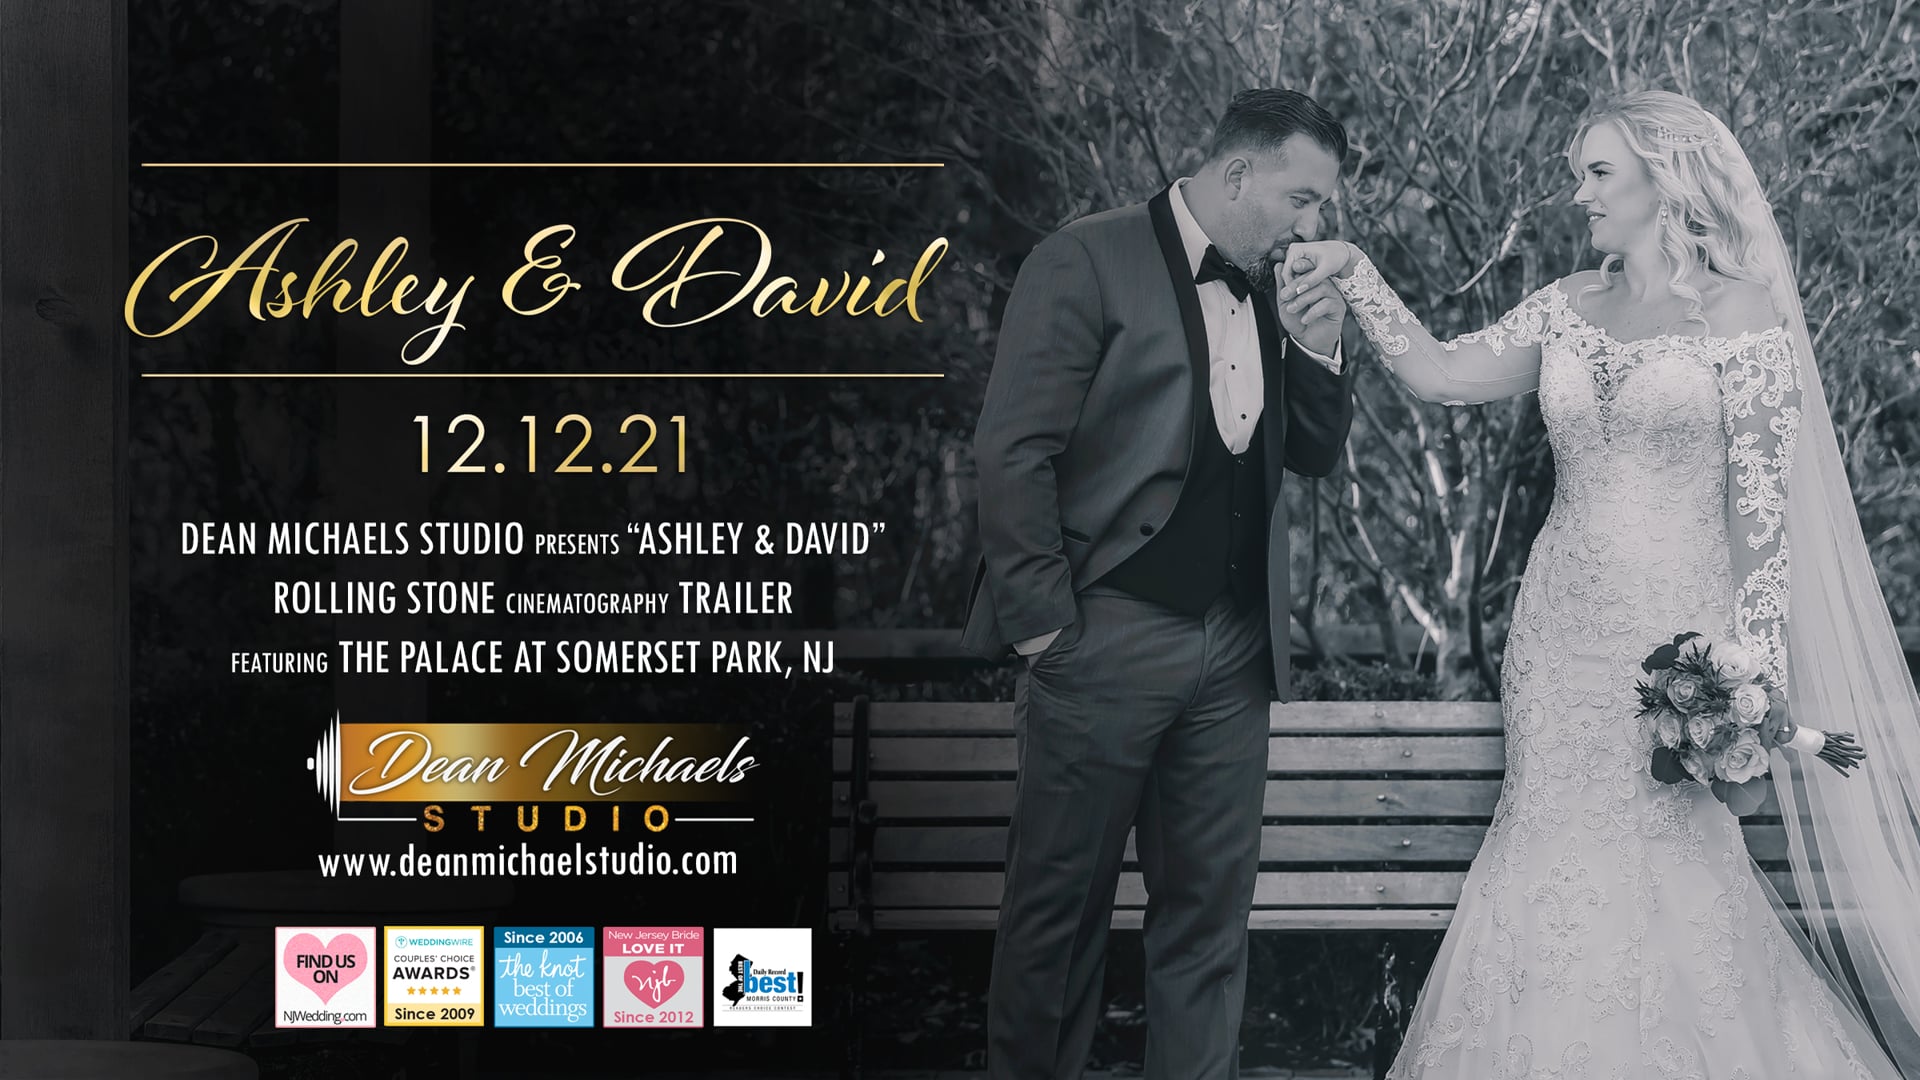 Ashley & David's Wedding Trailer at The Palace at Somerset Park, NJ